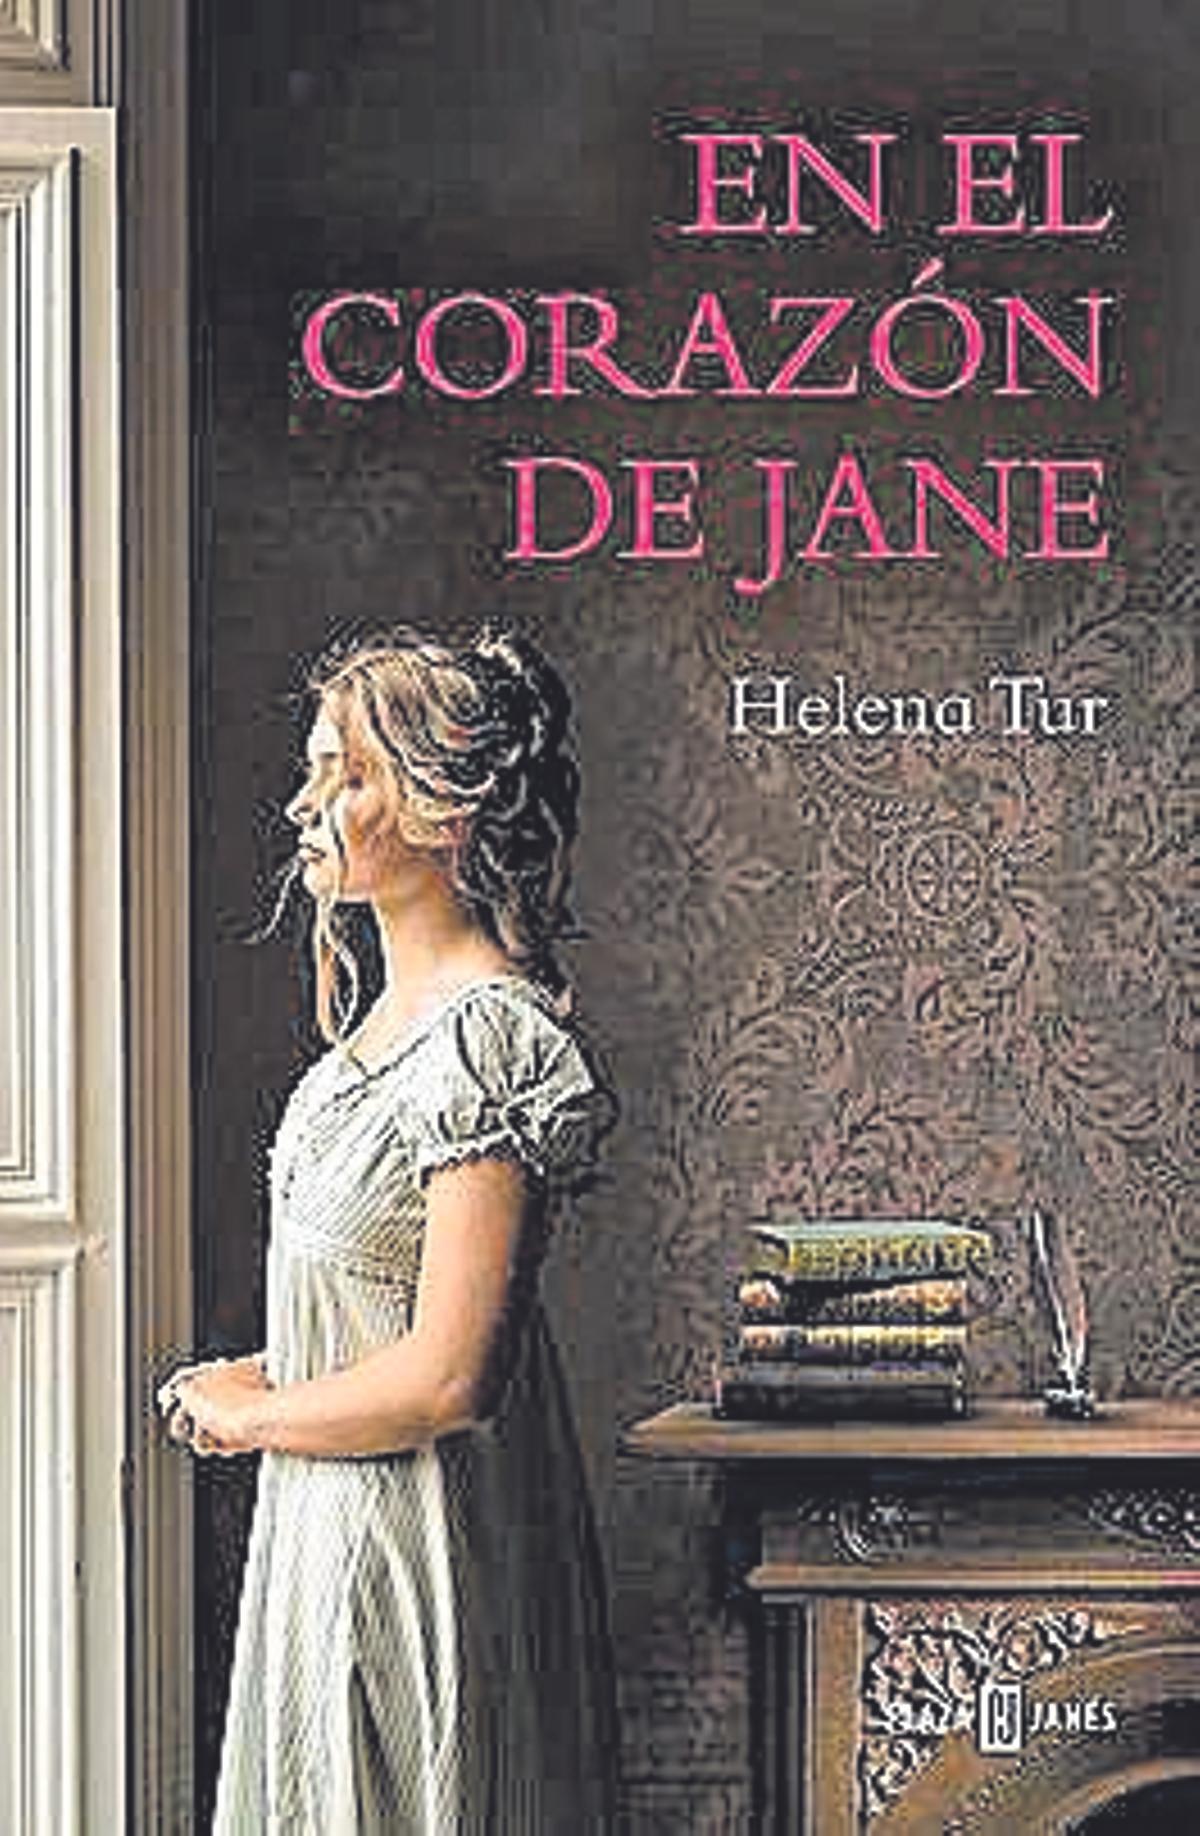 En el corazón de Jane, Helena Tur, Plaza y Janés, 368 páginas. 20,90 euros / ebook: 7,99 euros.